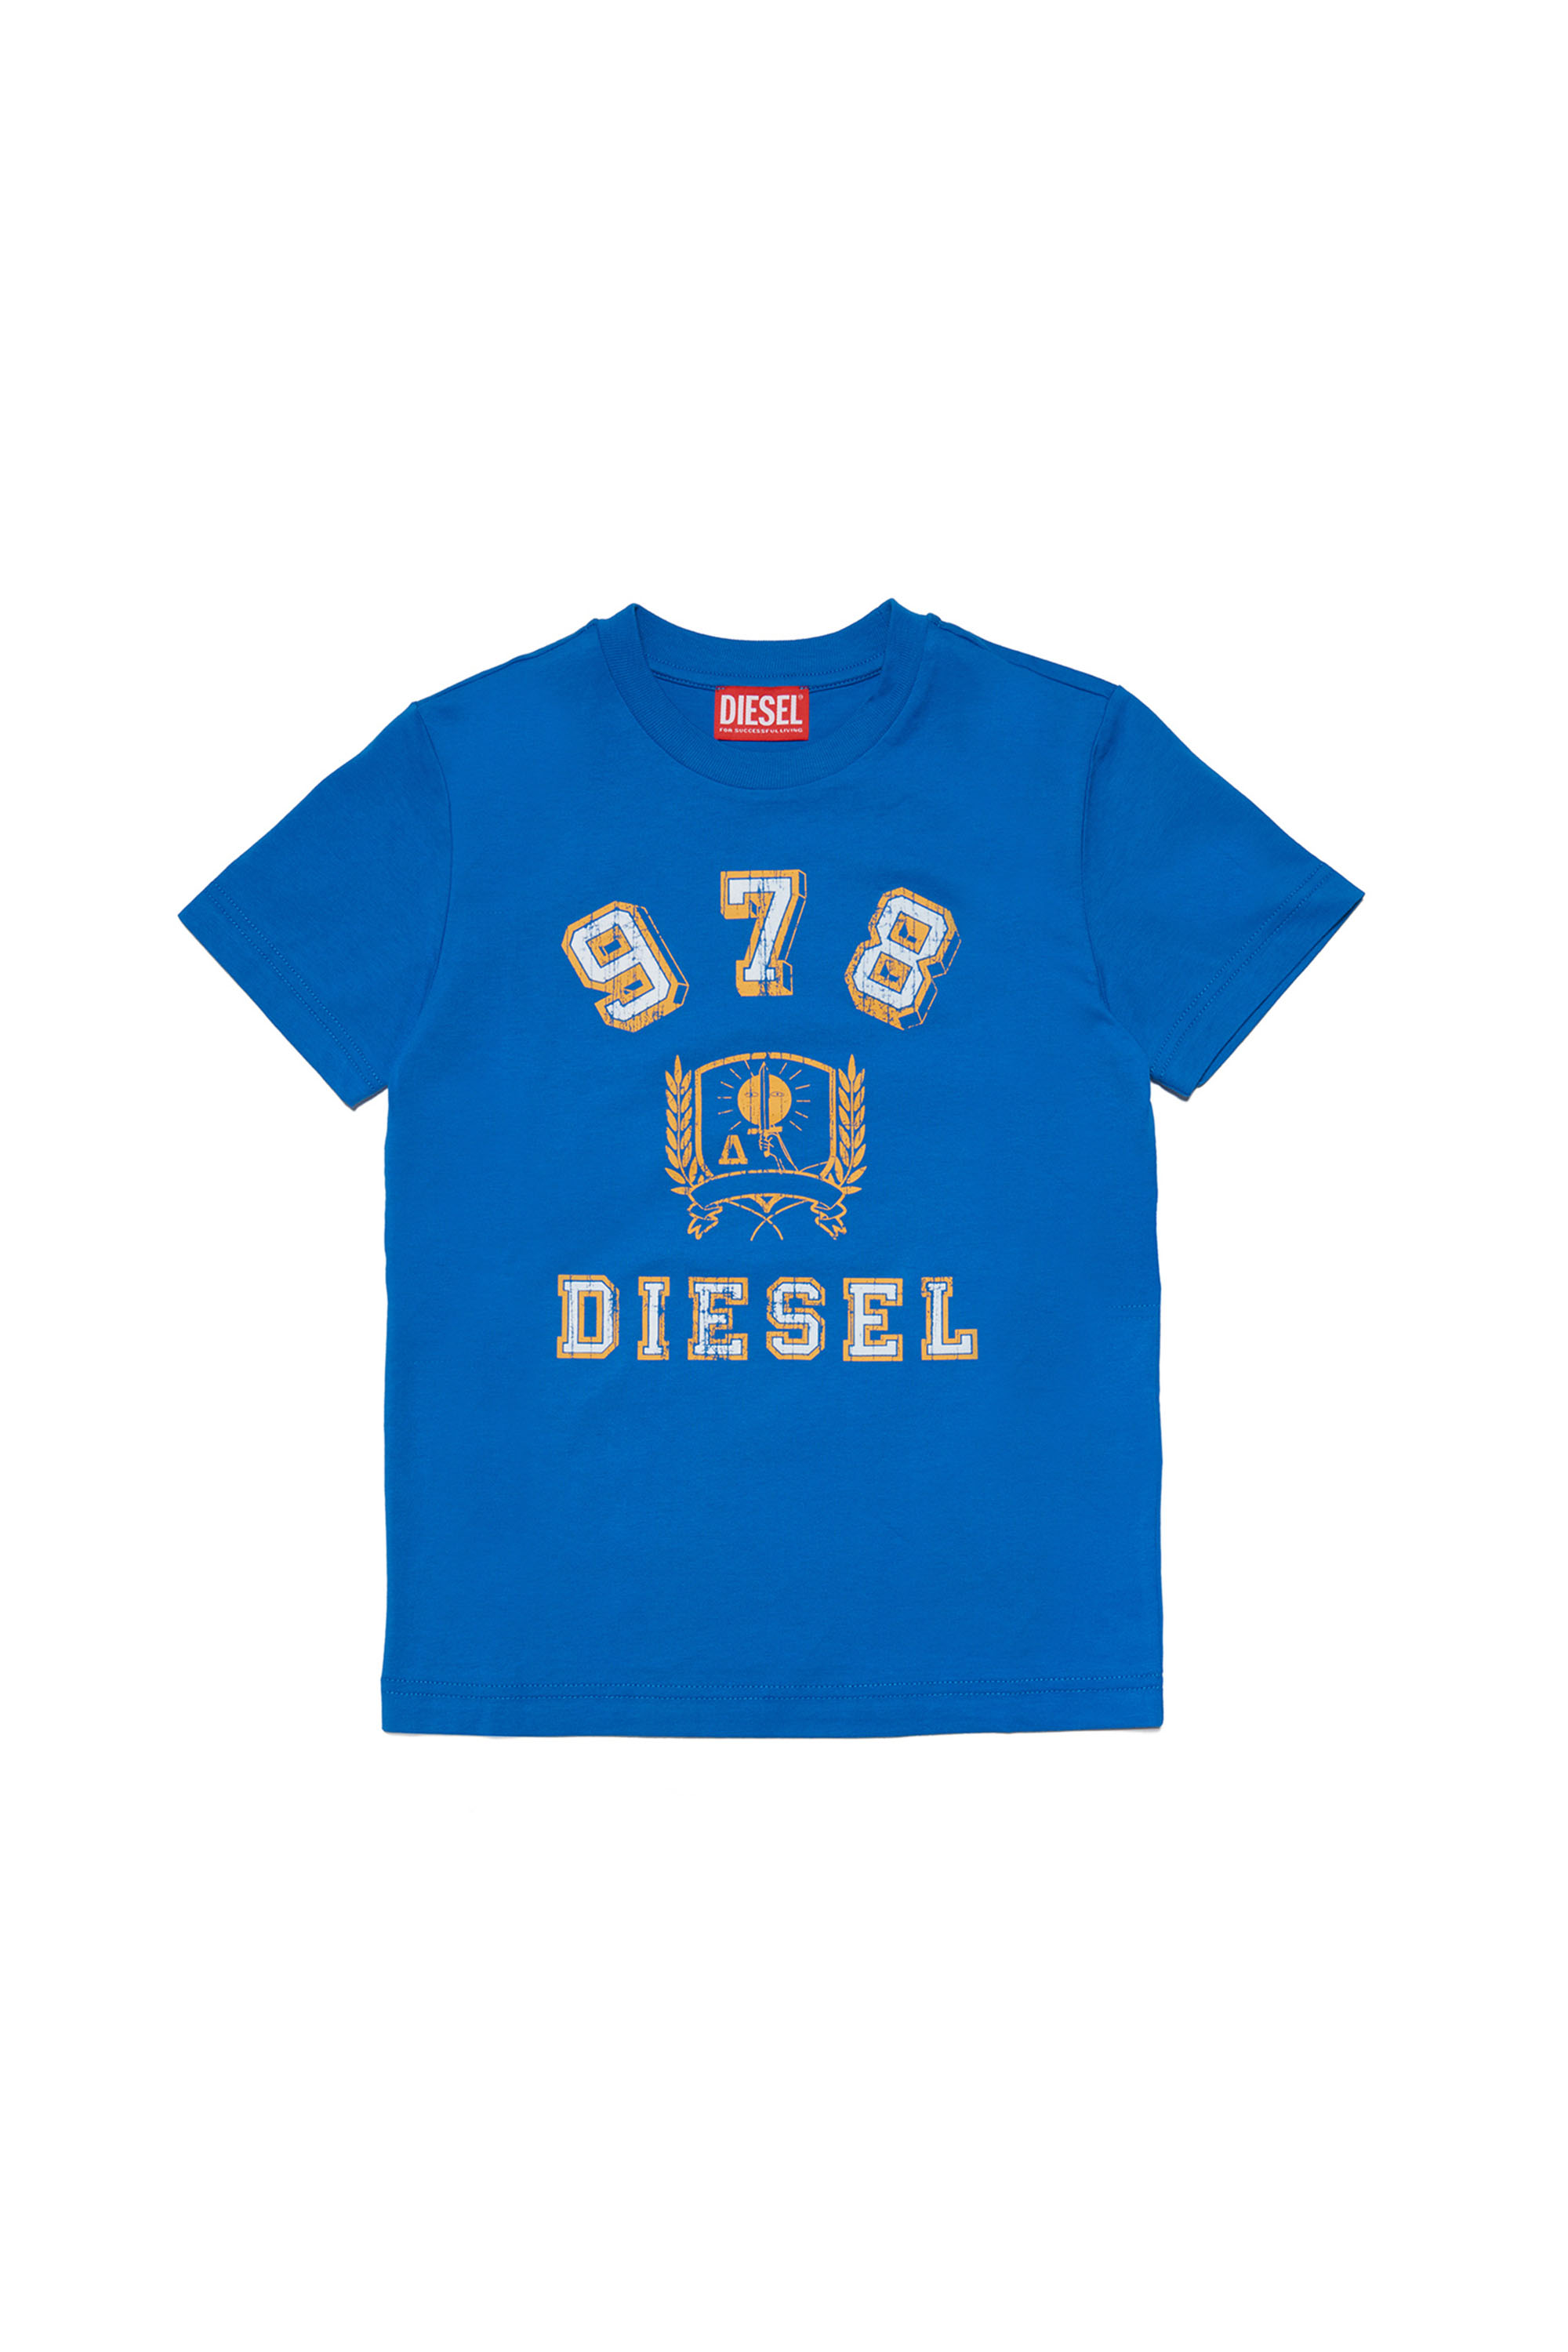 Diesel - TDIEGORE11, Blu - Image 1